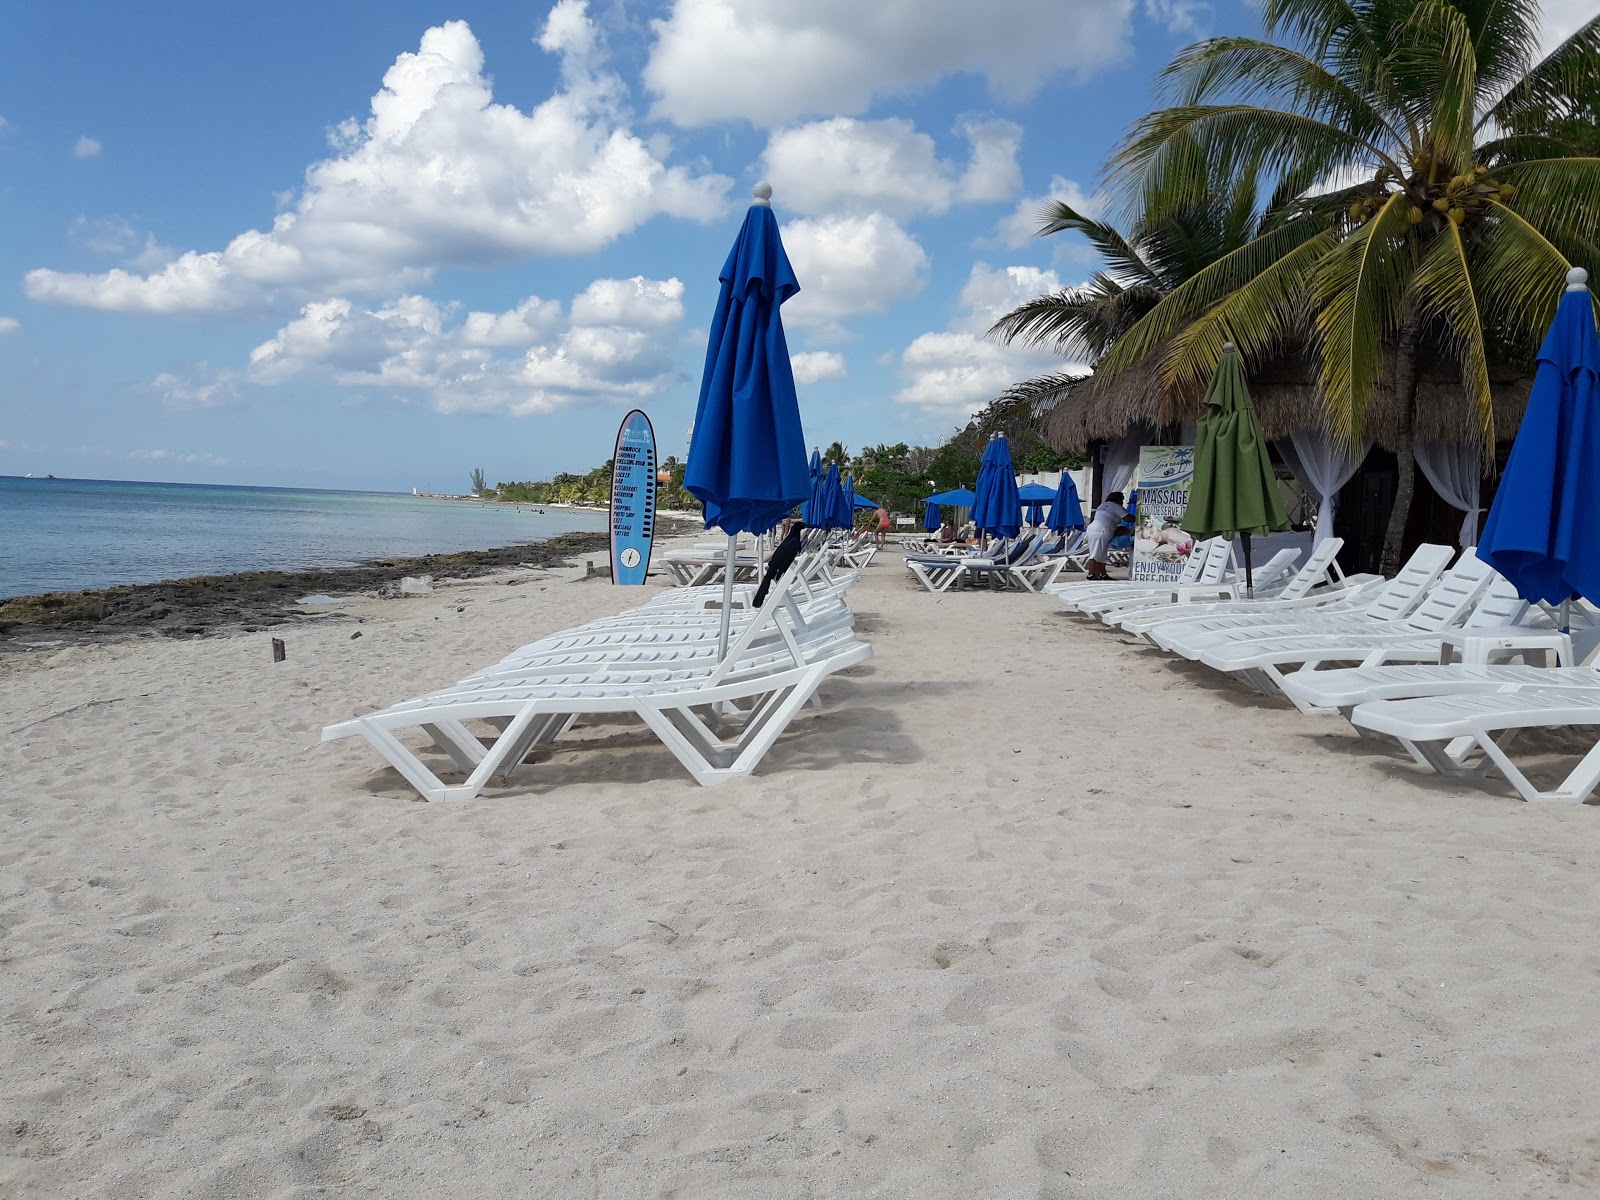 Playa Uvas'in fotoğrafı - rahatlamayı sevenler arasında popüler bir yer